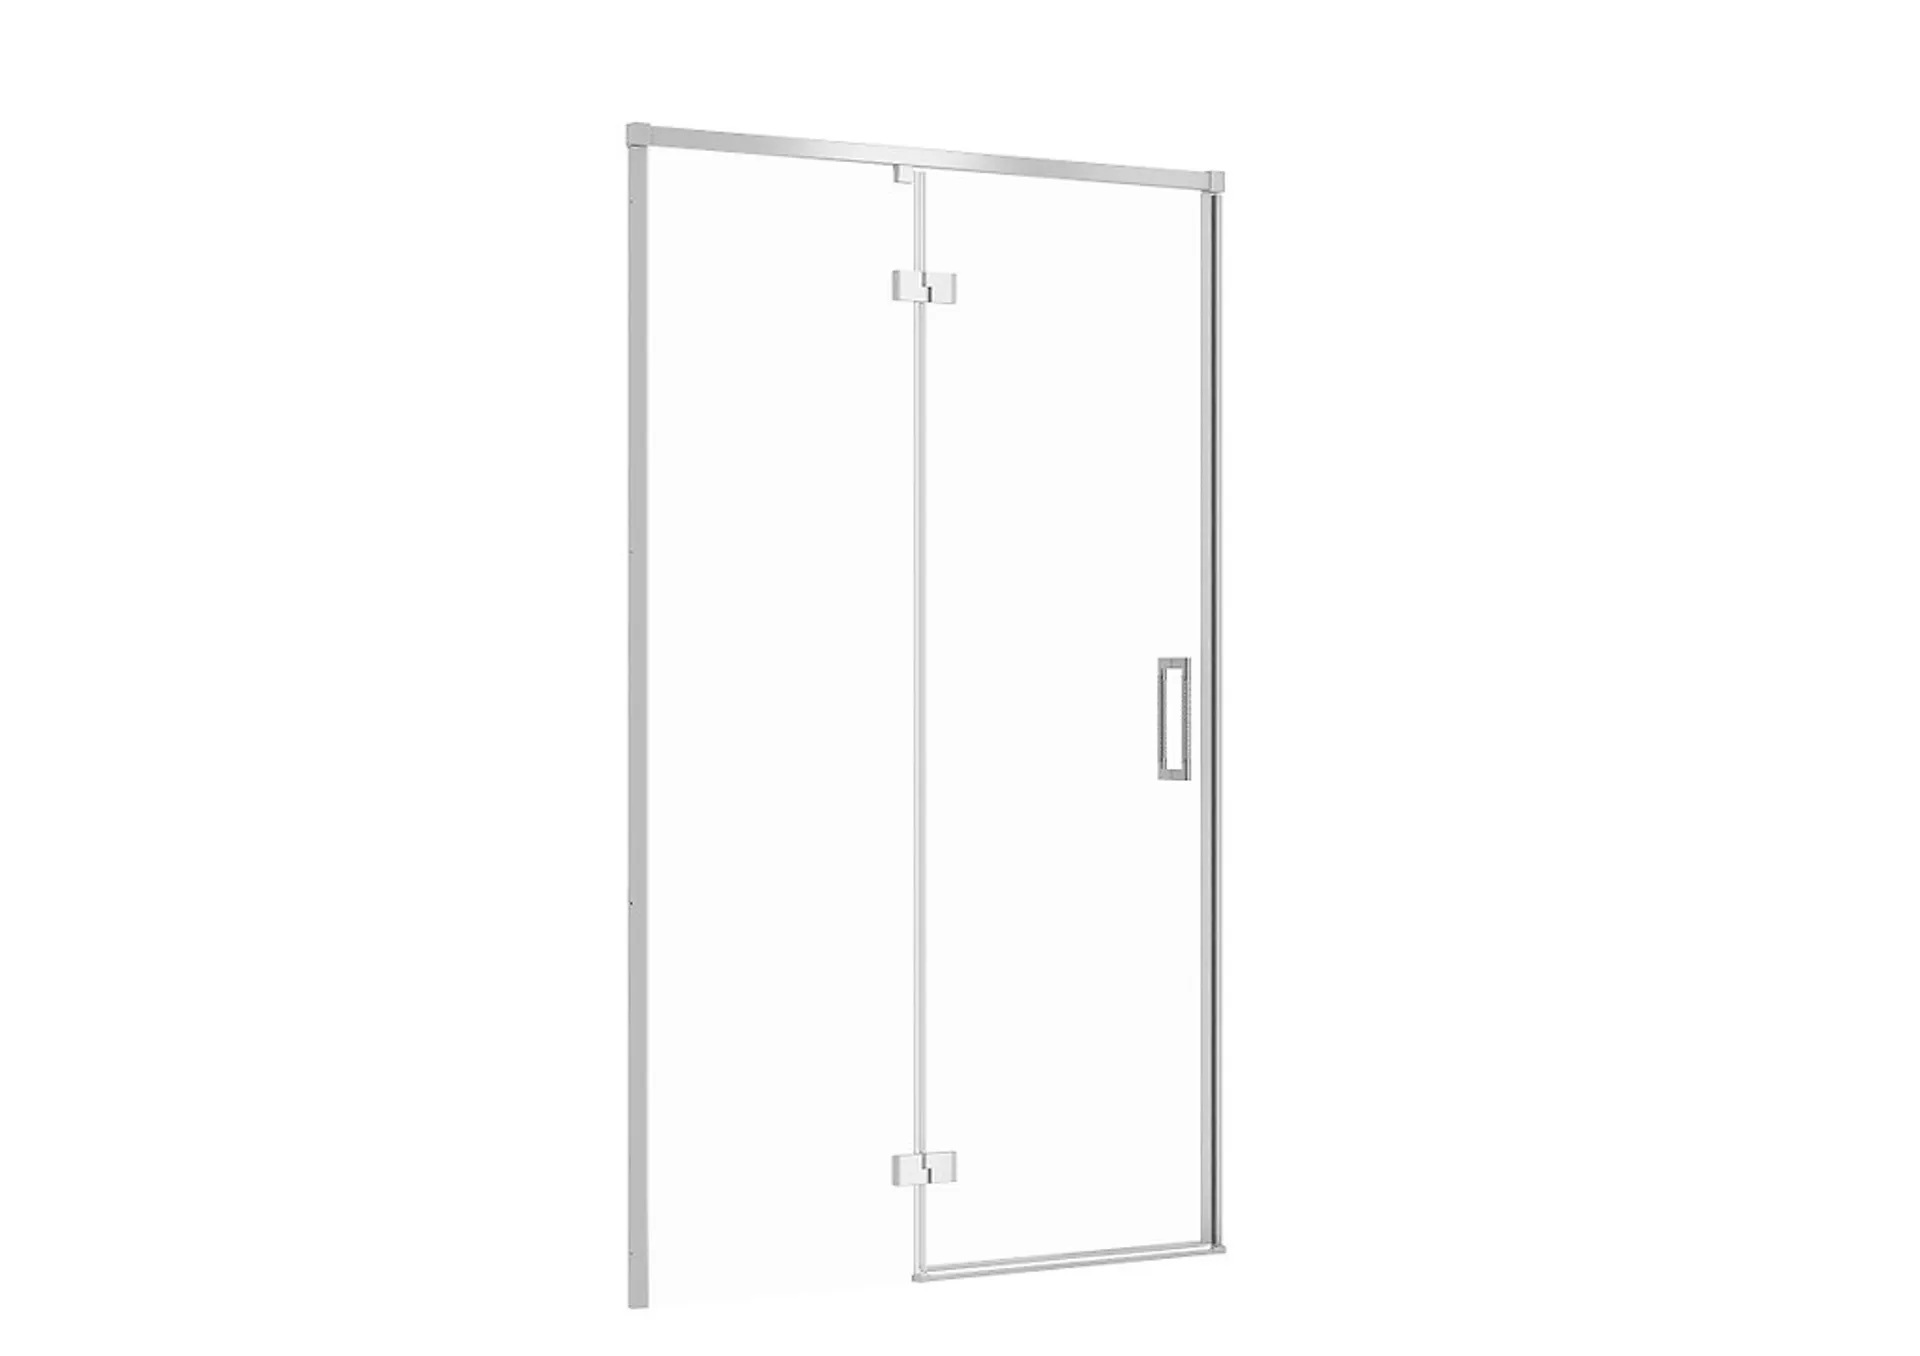 Drzwi prysznicowe Cersanit Larga 120X195 lewe chrom transparentne S932-122